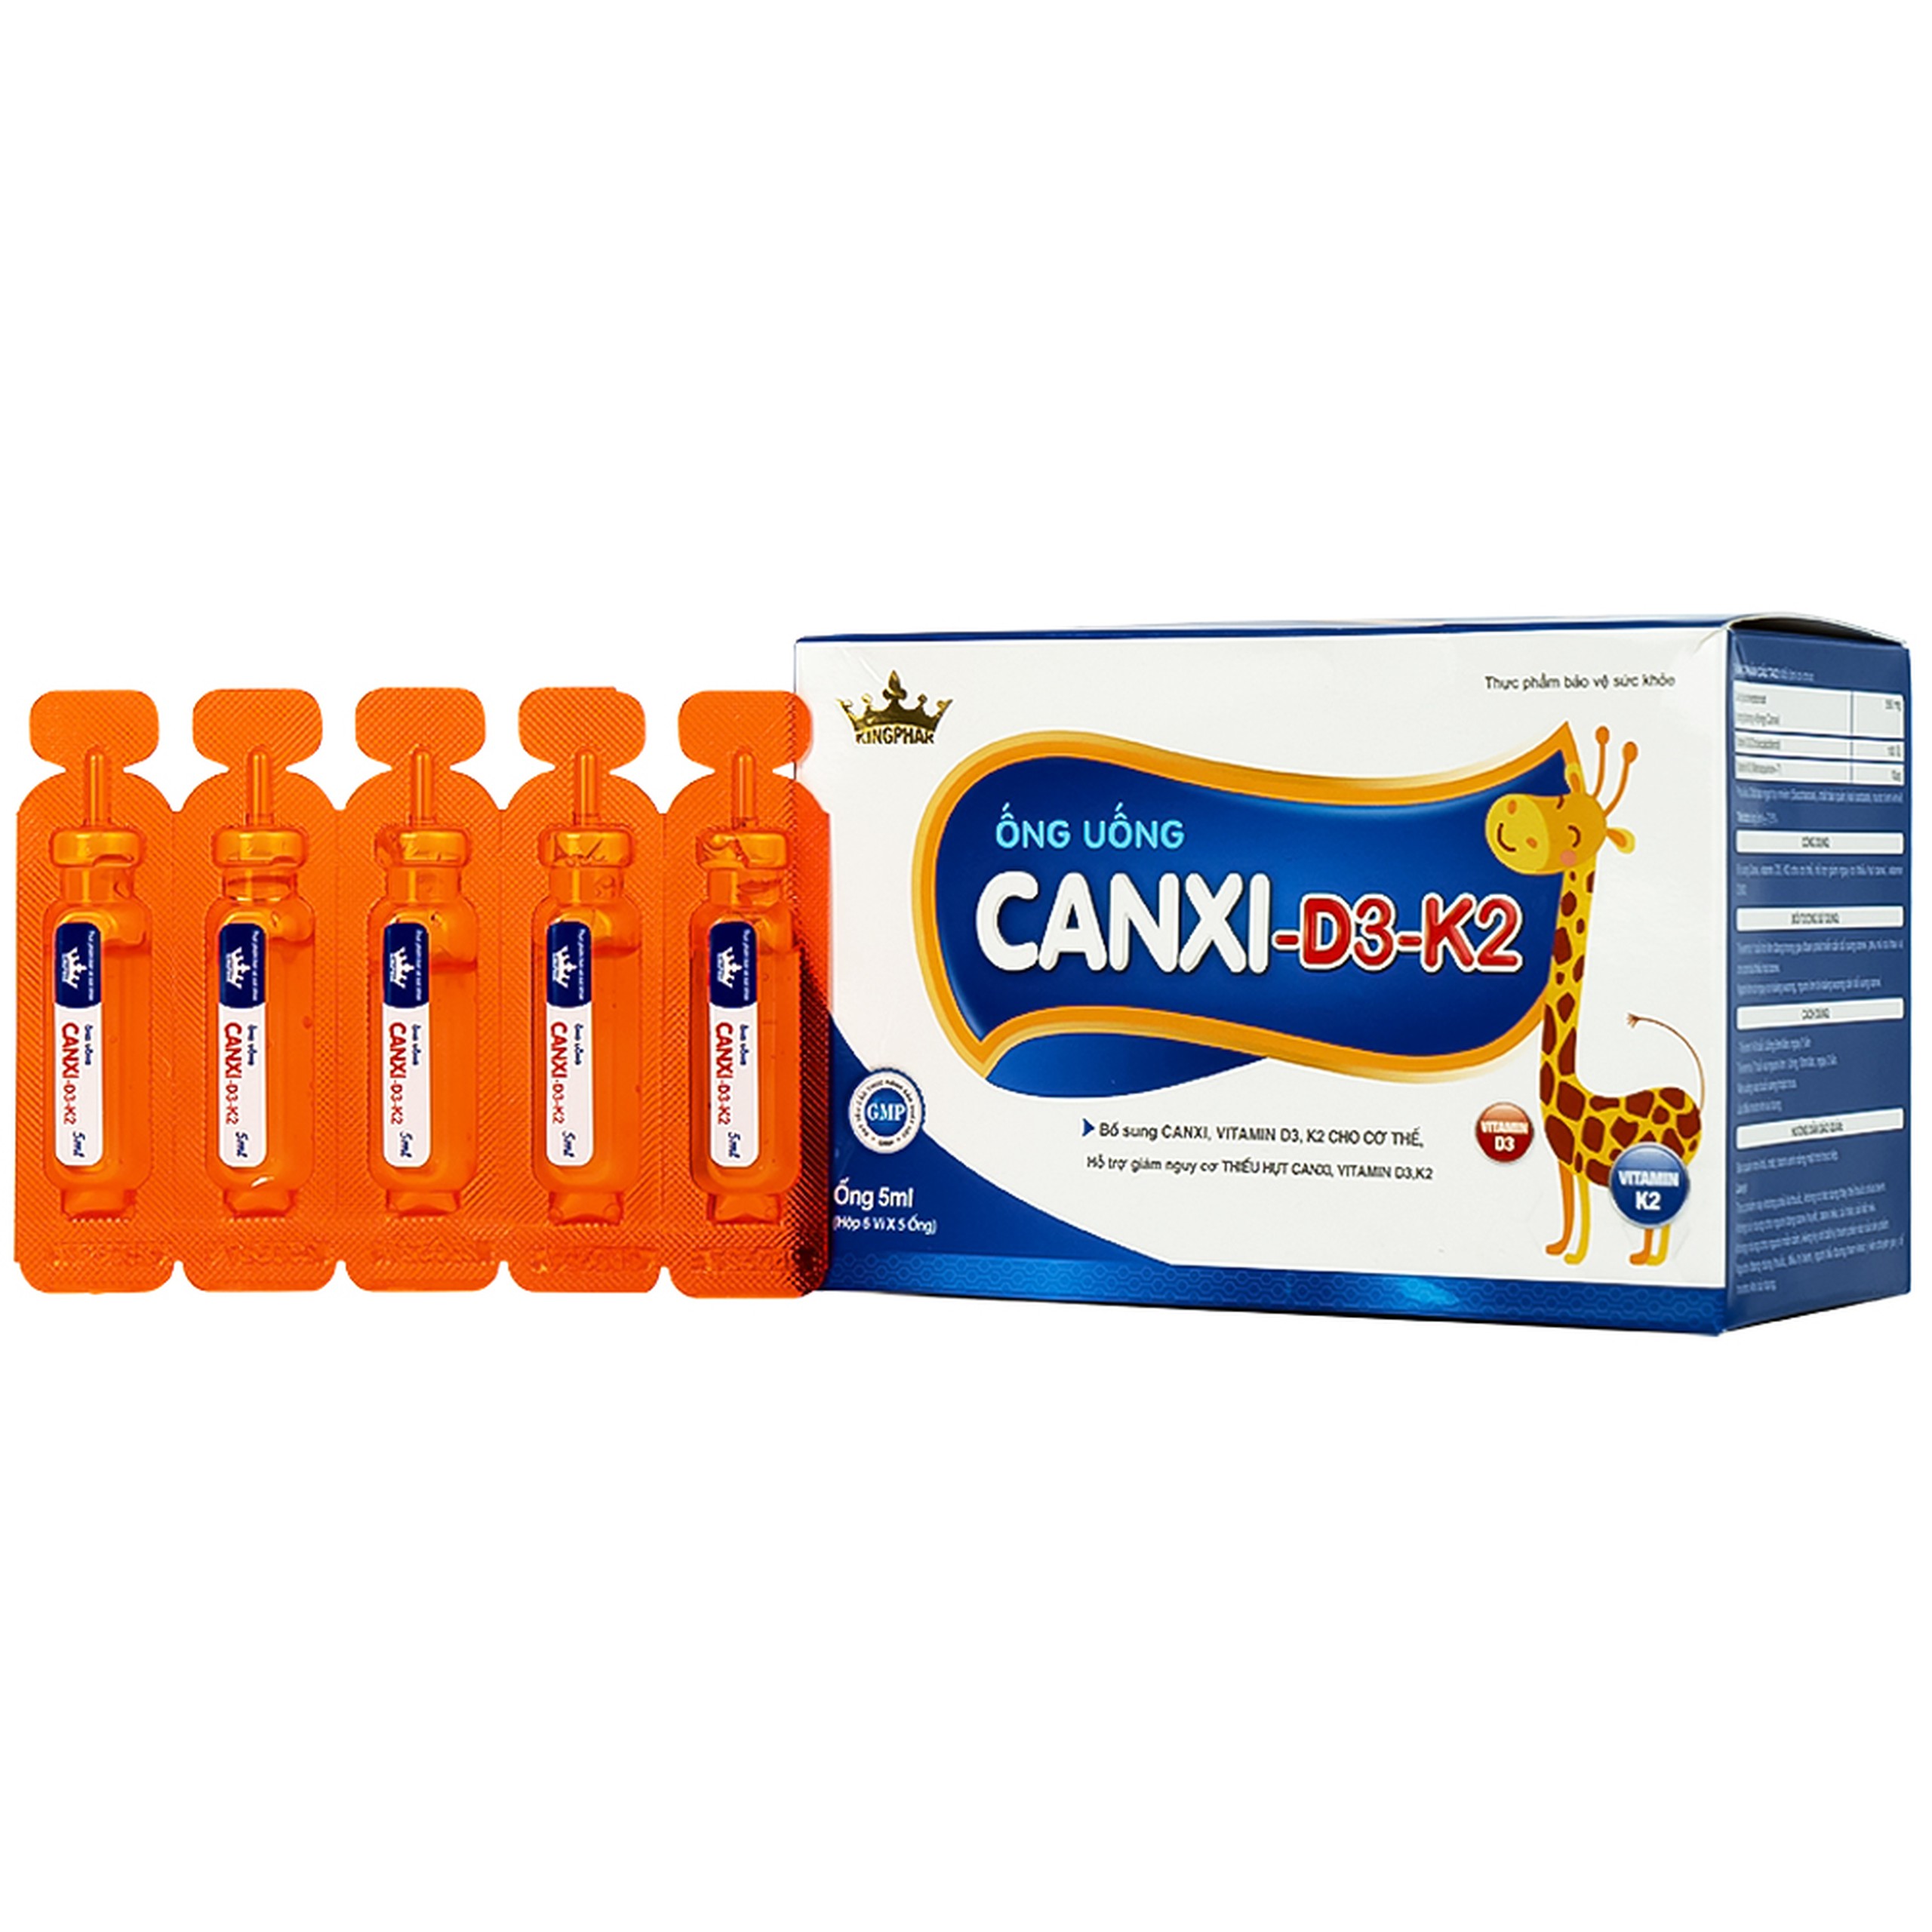 Siro ống uống Canxi-D3-K2 5ml Kingphar bổ sung canxi & vitamin D3 cho cơ thể (6 vỉ x 5 ống)